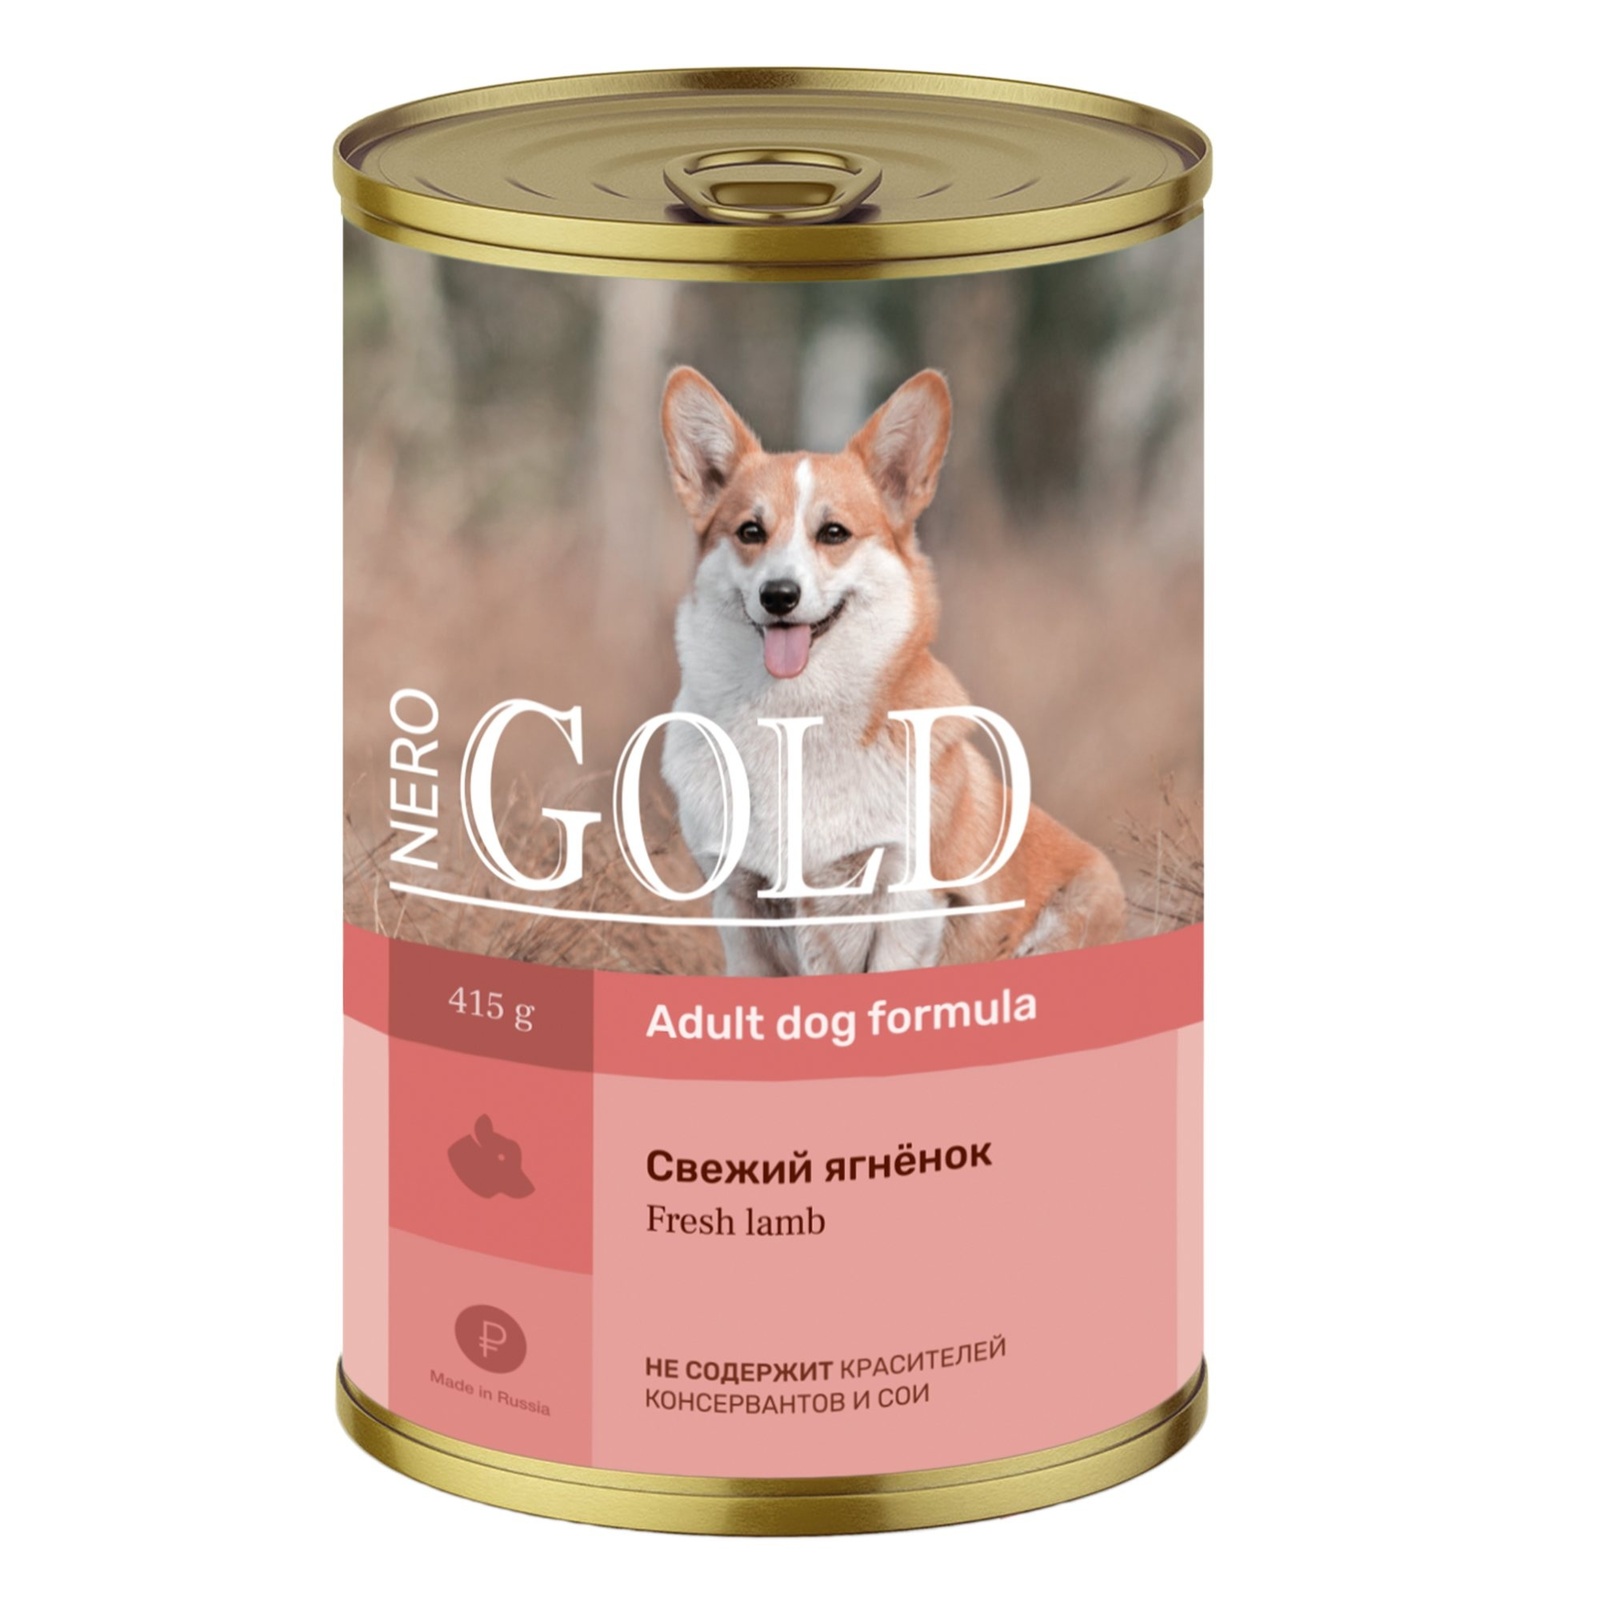 Nero Gold консервы Nero Gold консервы консервы для собак Свежий ягненок (415 г)